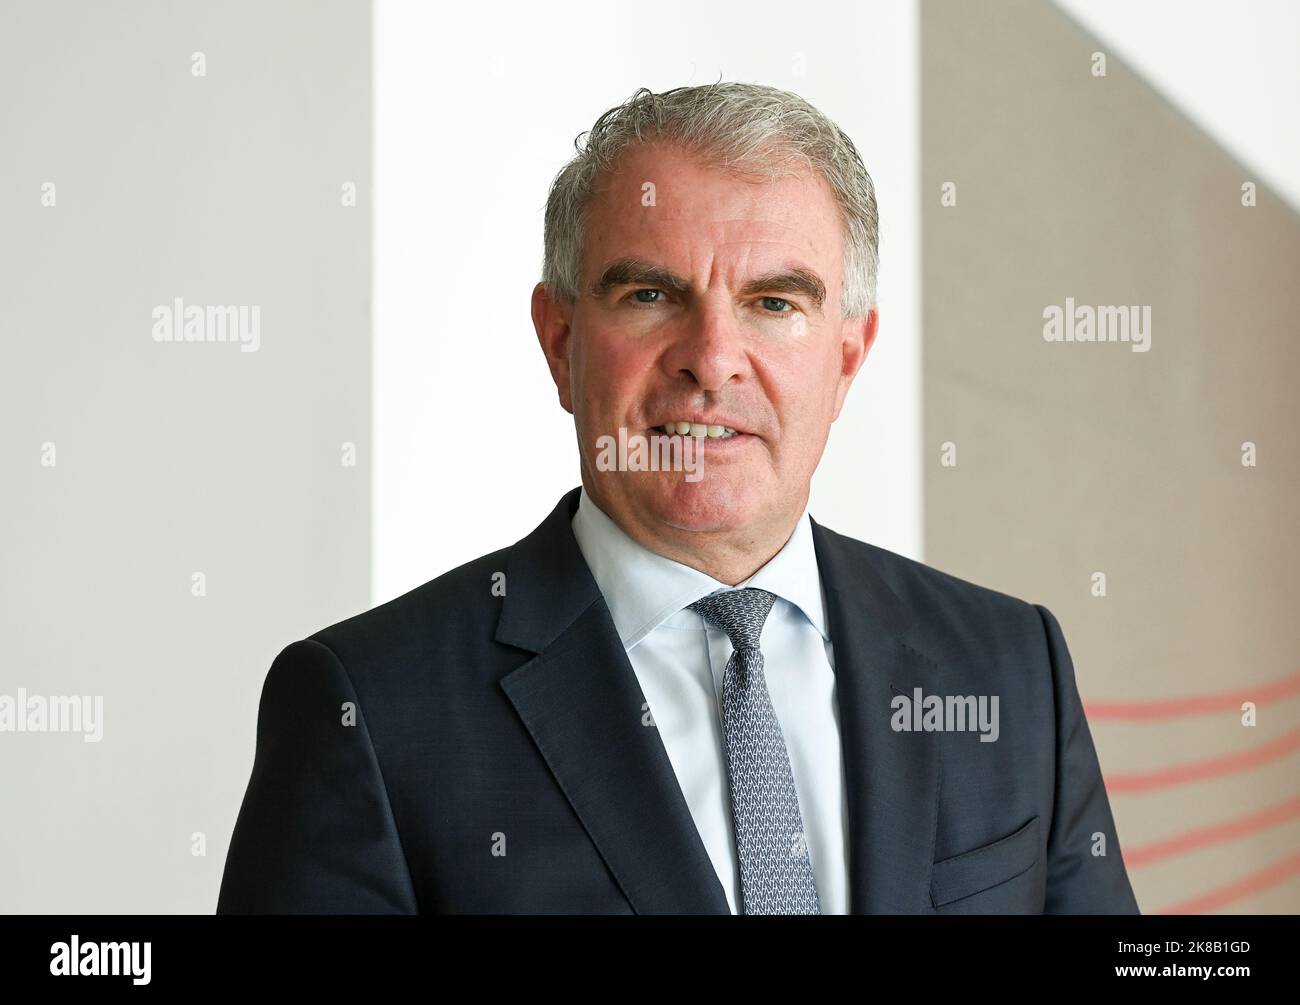 17 ottobre 2022, Berlino, Schönefeld: Carsten Spohr, CEO di Lufthansa, a margine di un'intervista a dpa. Foto: Jens Kalaene/dpa Foto Stock